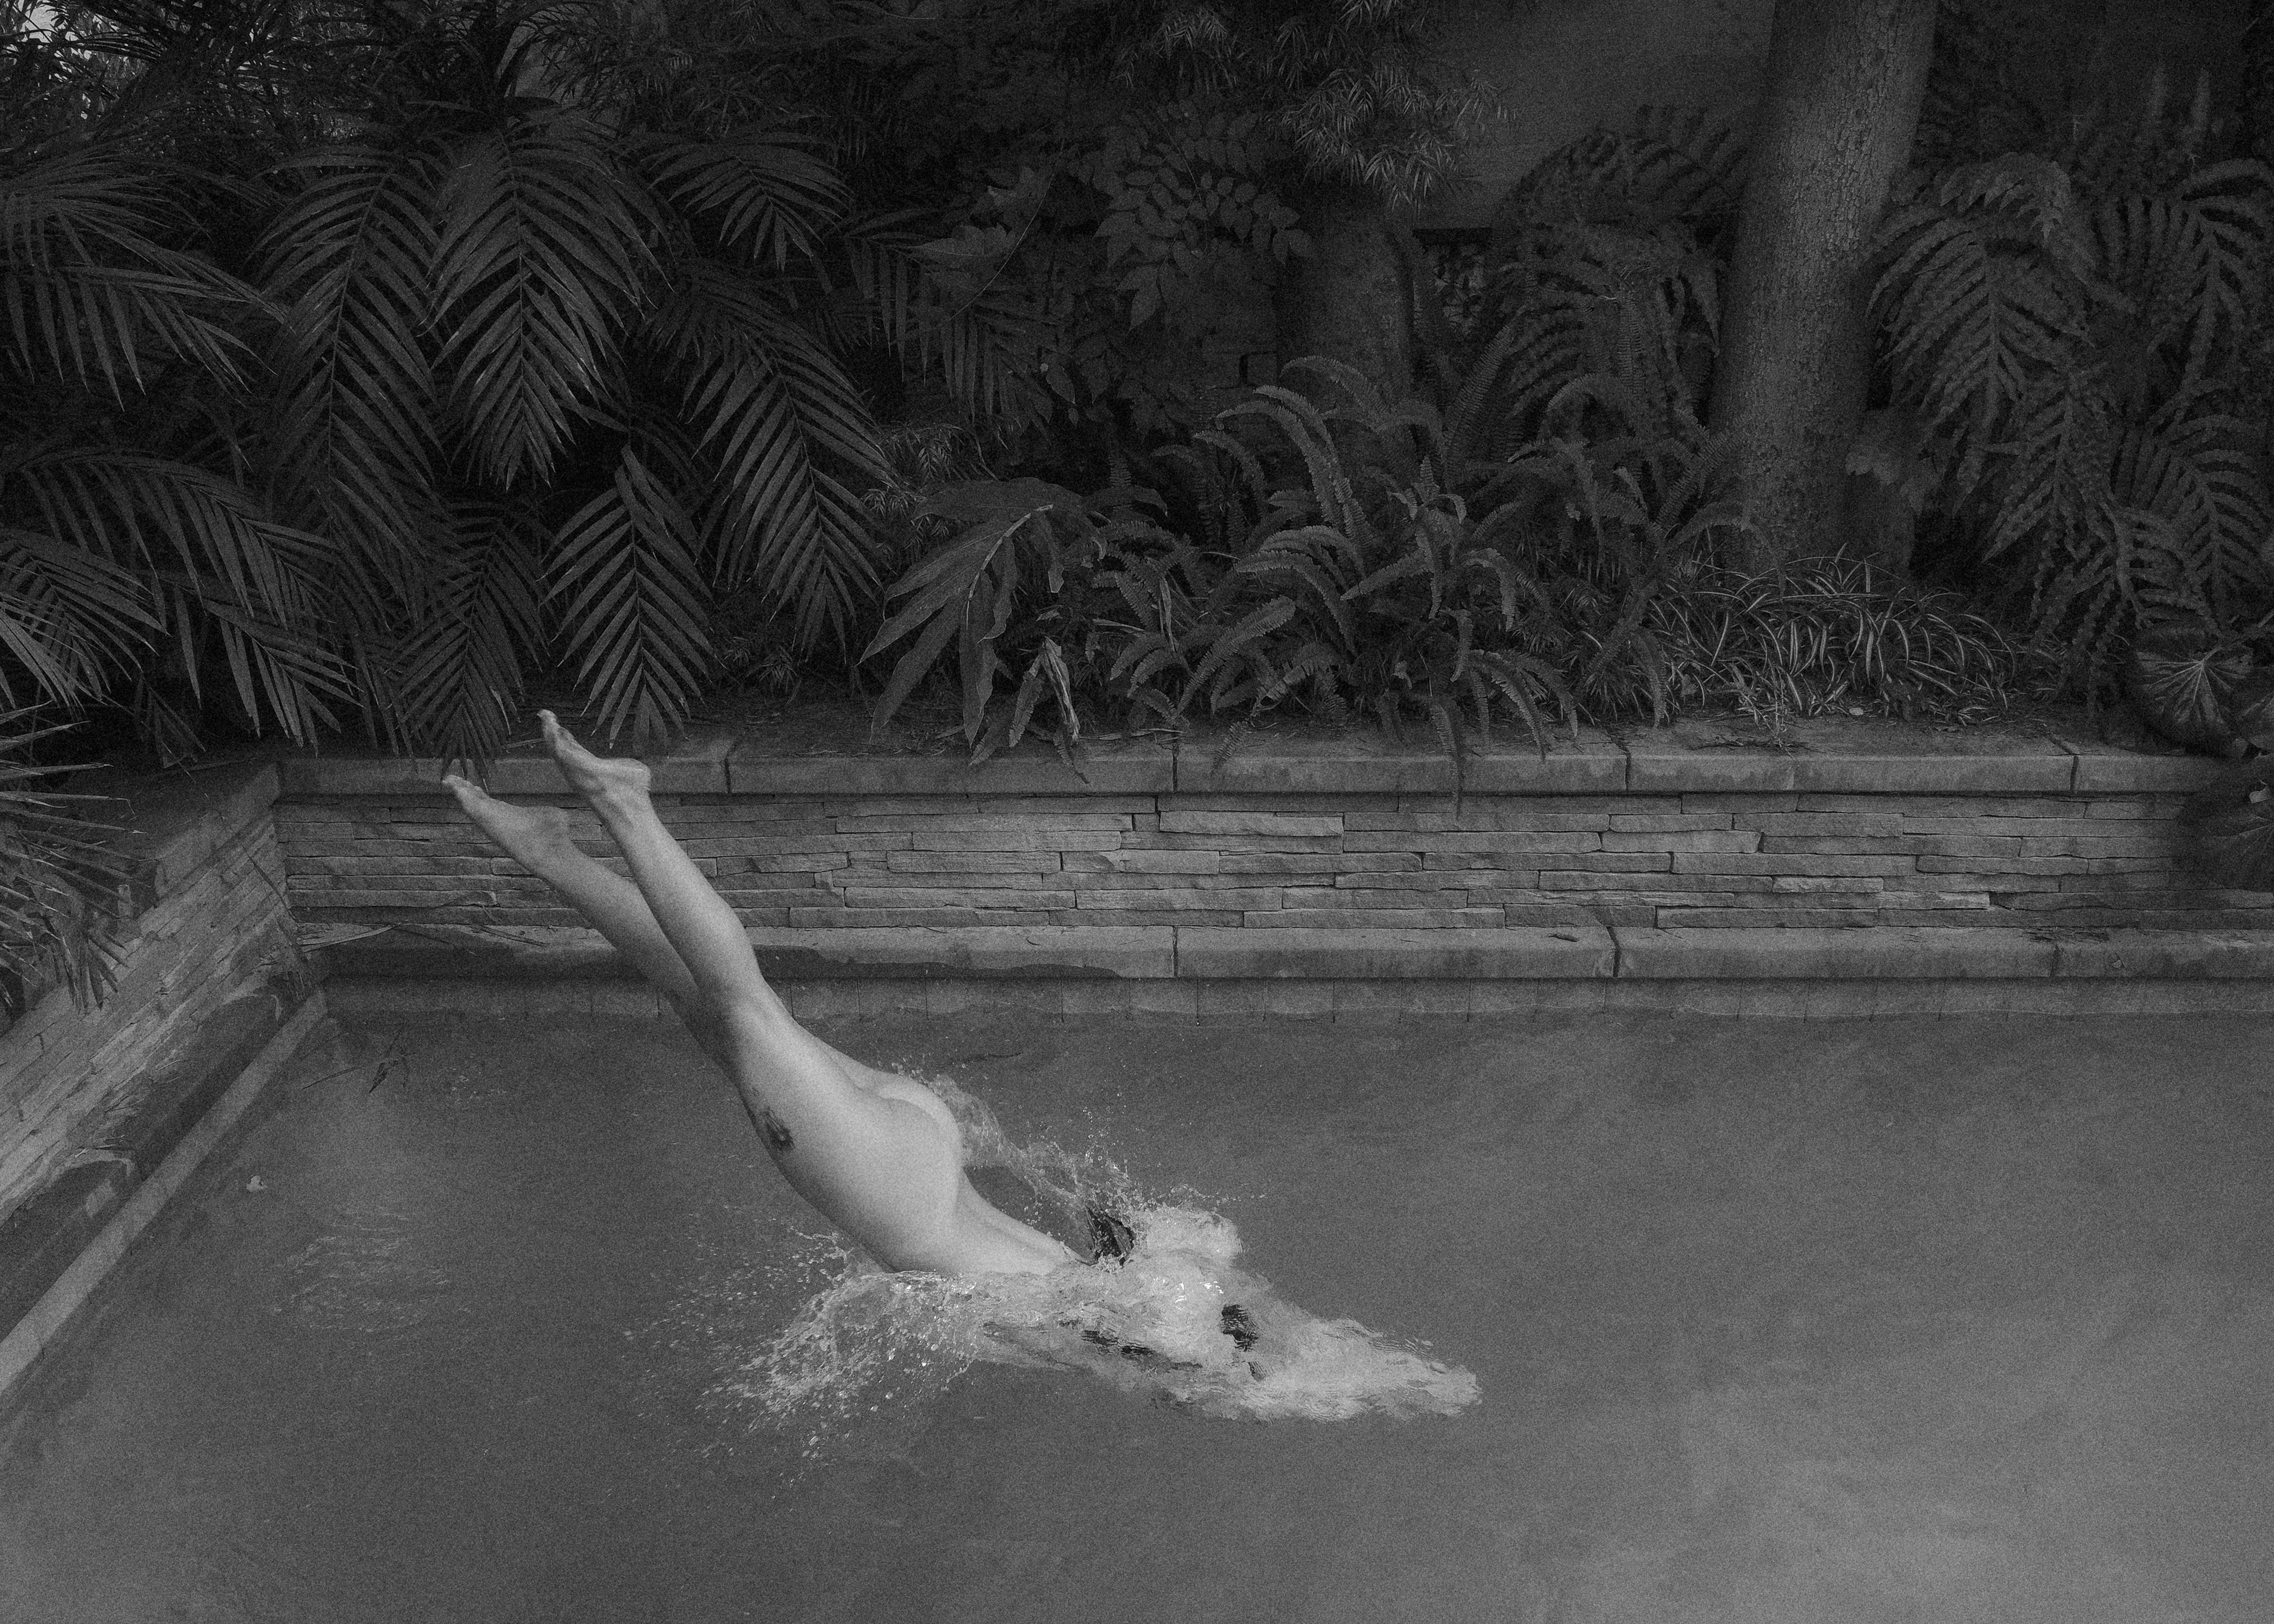 "Dive In" Fotografie 15,5" x 19,5" in Auflage von 15 von Larsen Sotelo